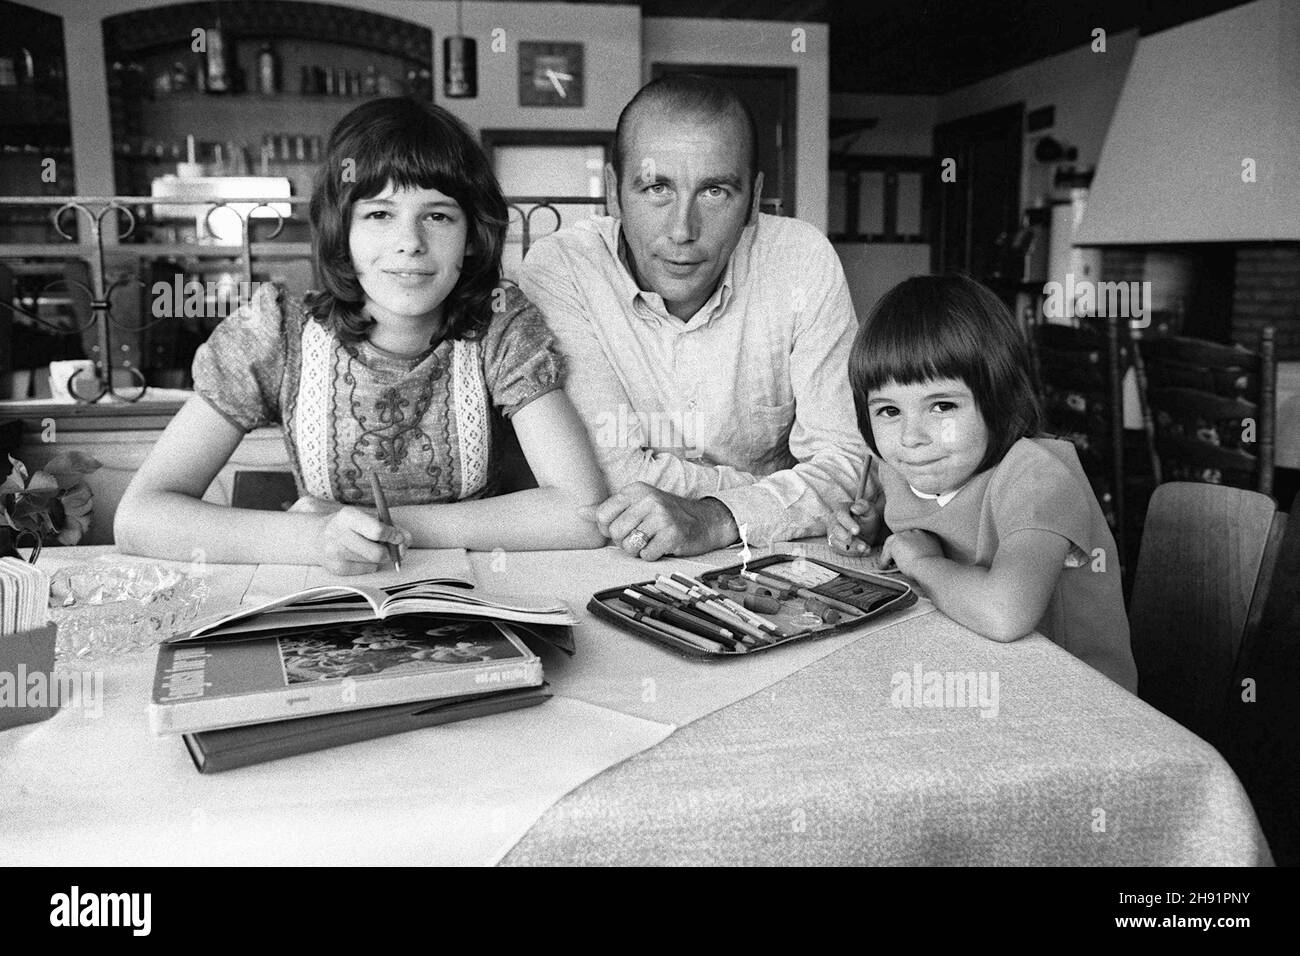 Horst Eckel est mort aujourd'hui (3 décembre 2021)!Horst ECKEL, Allemagne, ancien joueur de football, champion du monde de football de 1954, est assis à table avec ses filles Susanne et Dagmar, les enfants font leurs devoirs, 02.25.1973. Vé-ÇvÇ Banque D'Images